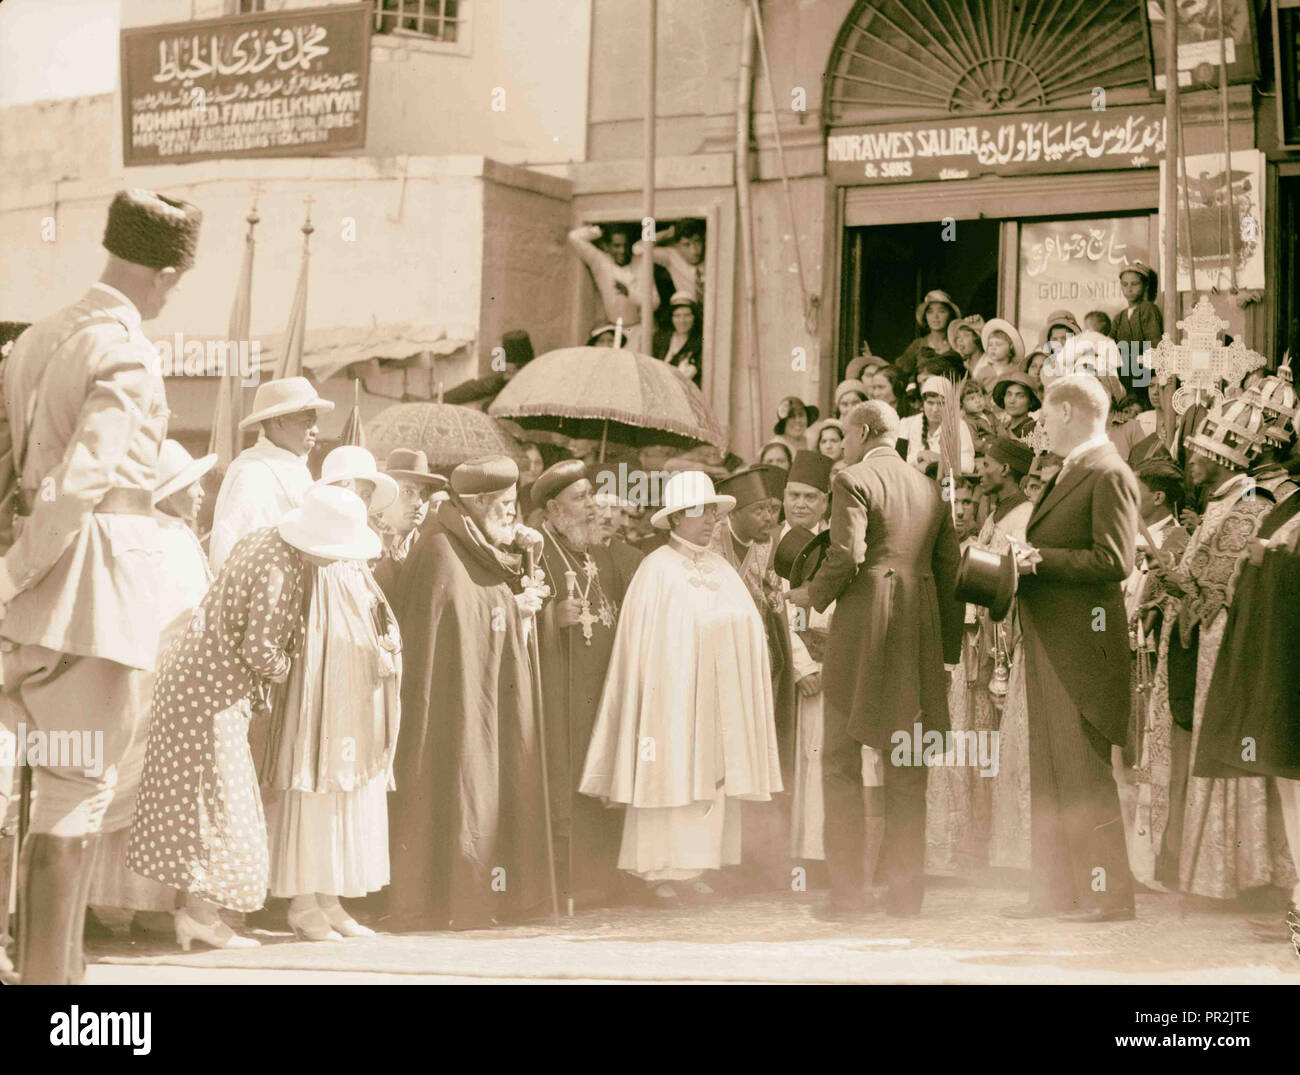 Reine Mannen de l'Éthiopie visite Jérusalem. Le 6 septembre 1933. S.m. La Reine Mannen avec les membres de l'Abyssin clergé Banque D'Images